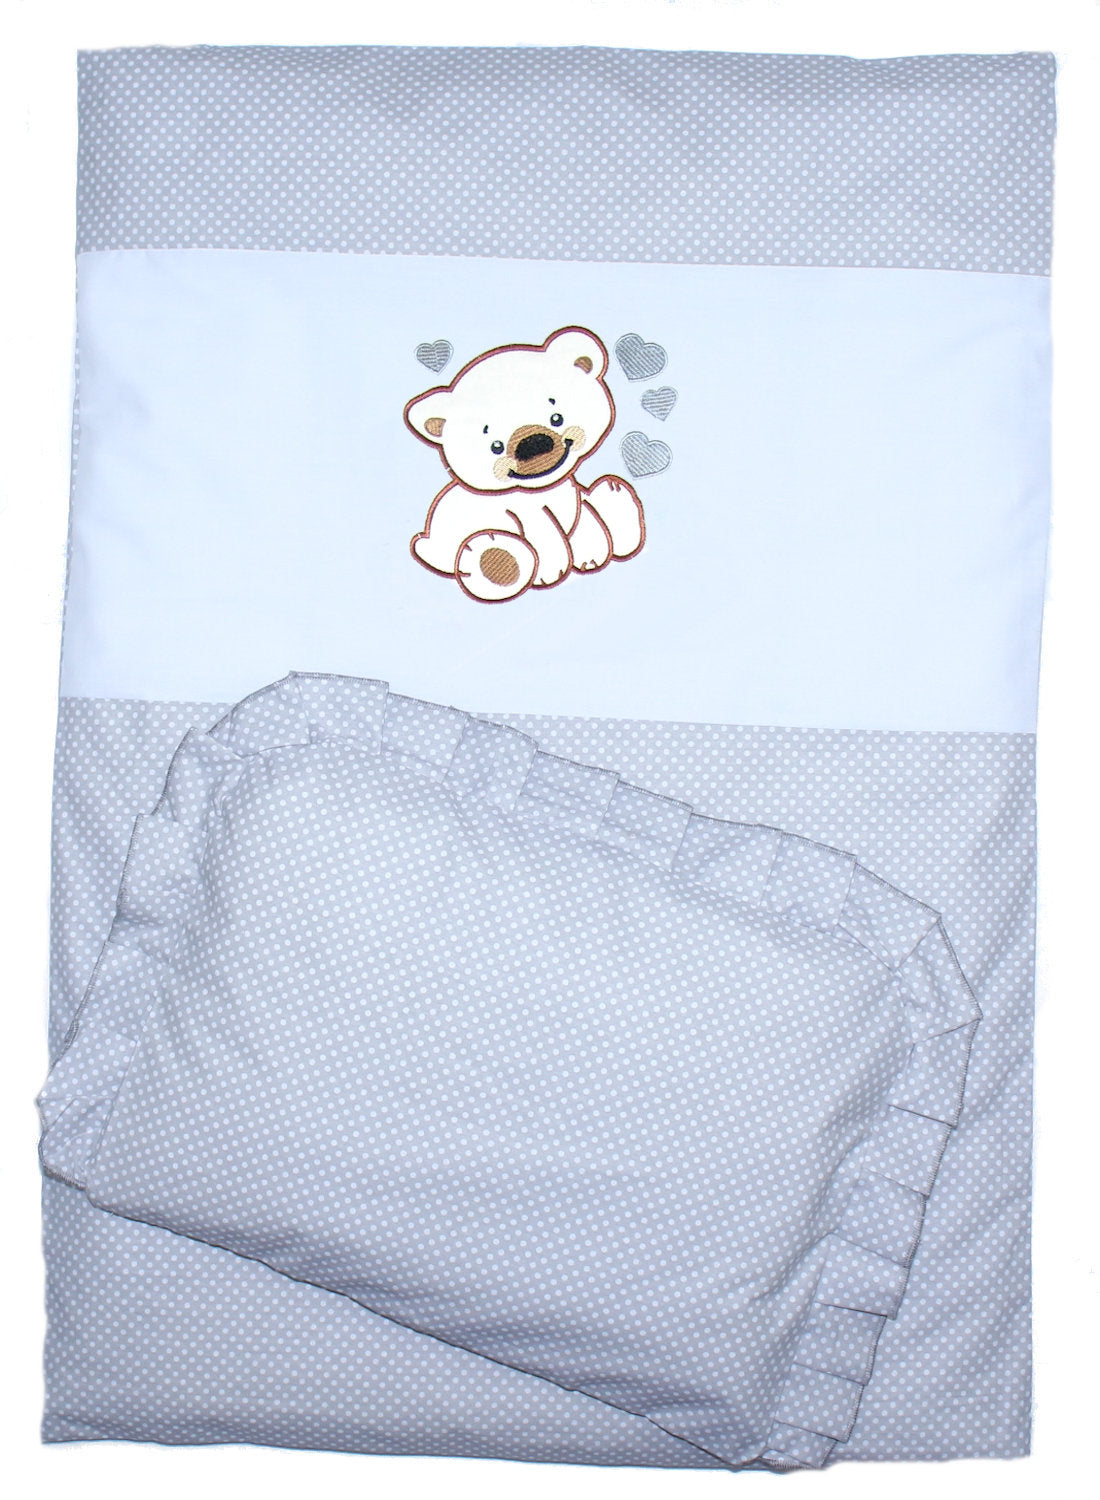 2- 4tlg Kinderwagenset - Bärchen mit Herzen - Punkten Grau- Bettwäsche für Kinderwagen Bezüge Decke Kissen